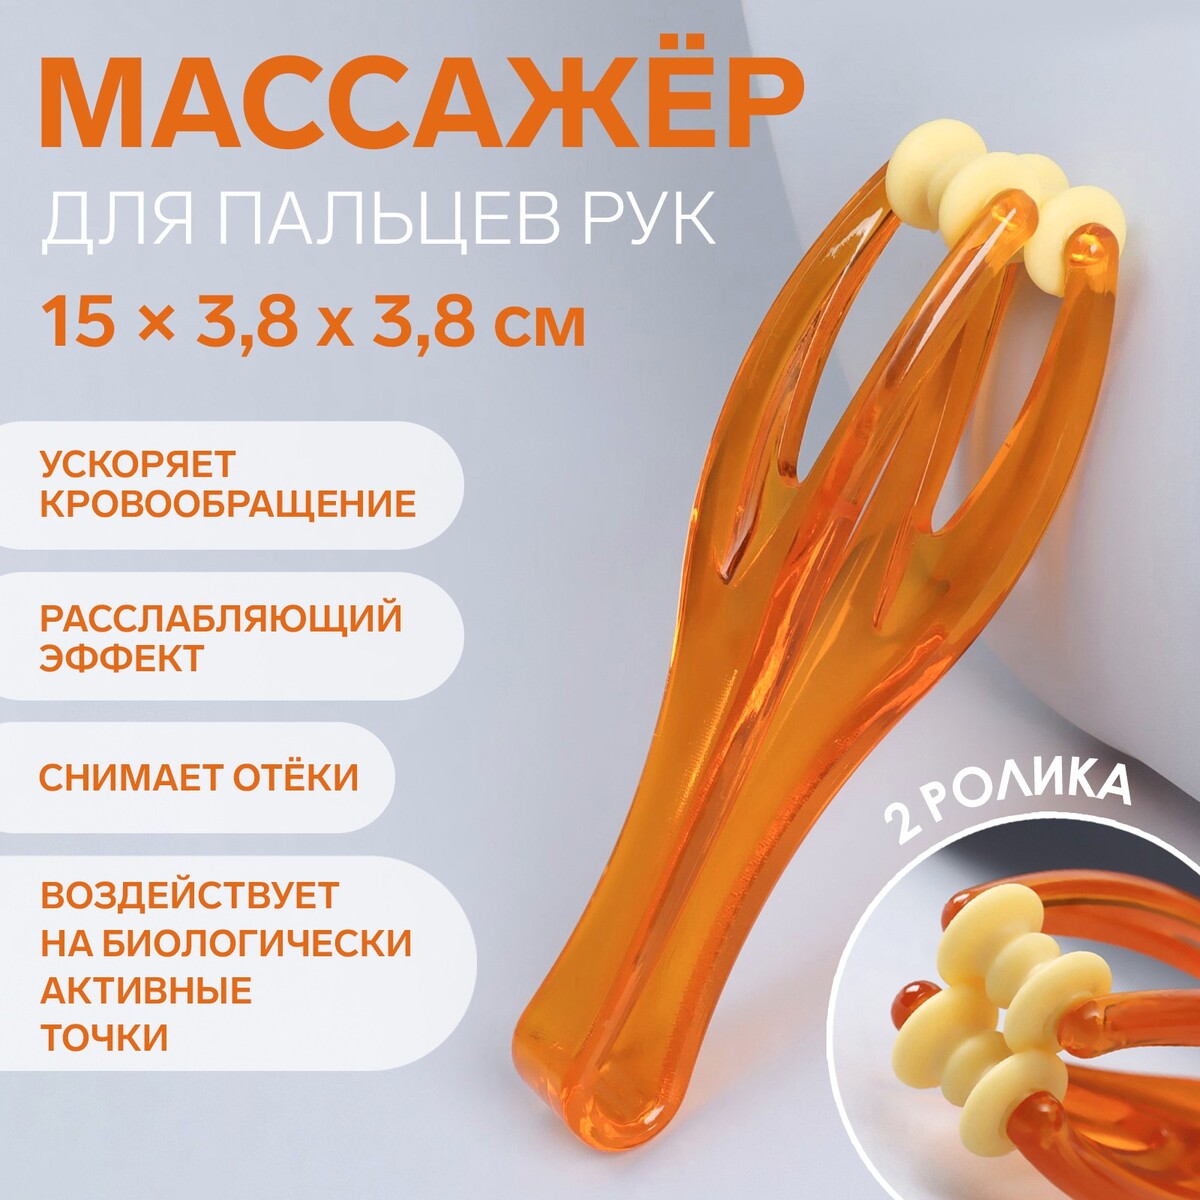 Массажер для пальцев рук, 14,5 × 3,8 × 3,2 см, 2 ролика, цвет оранжевый массажер ручной роликовый 2 sportex 154 021 e40375 оранжевый